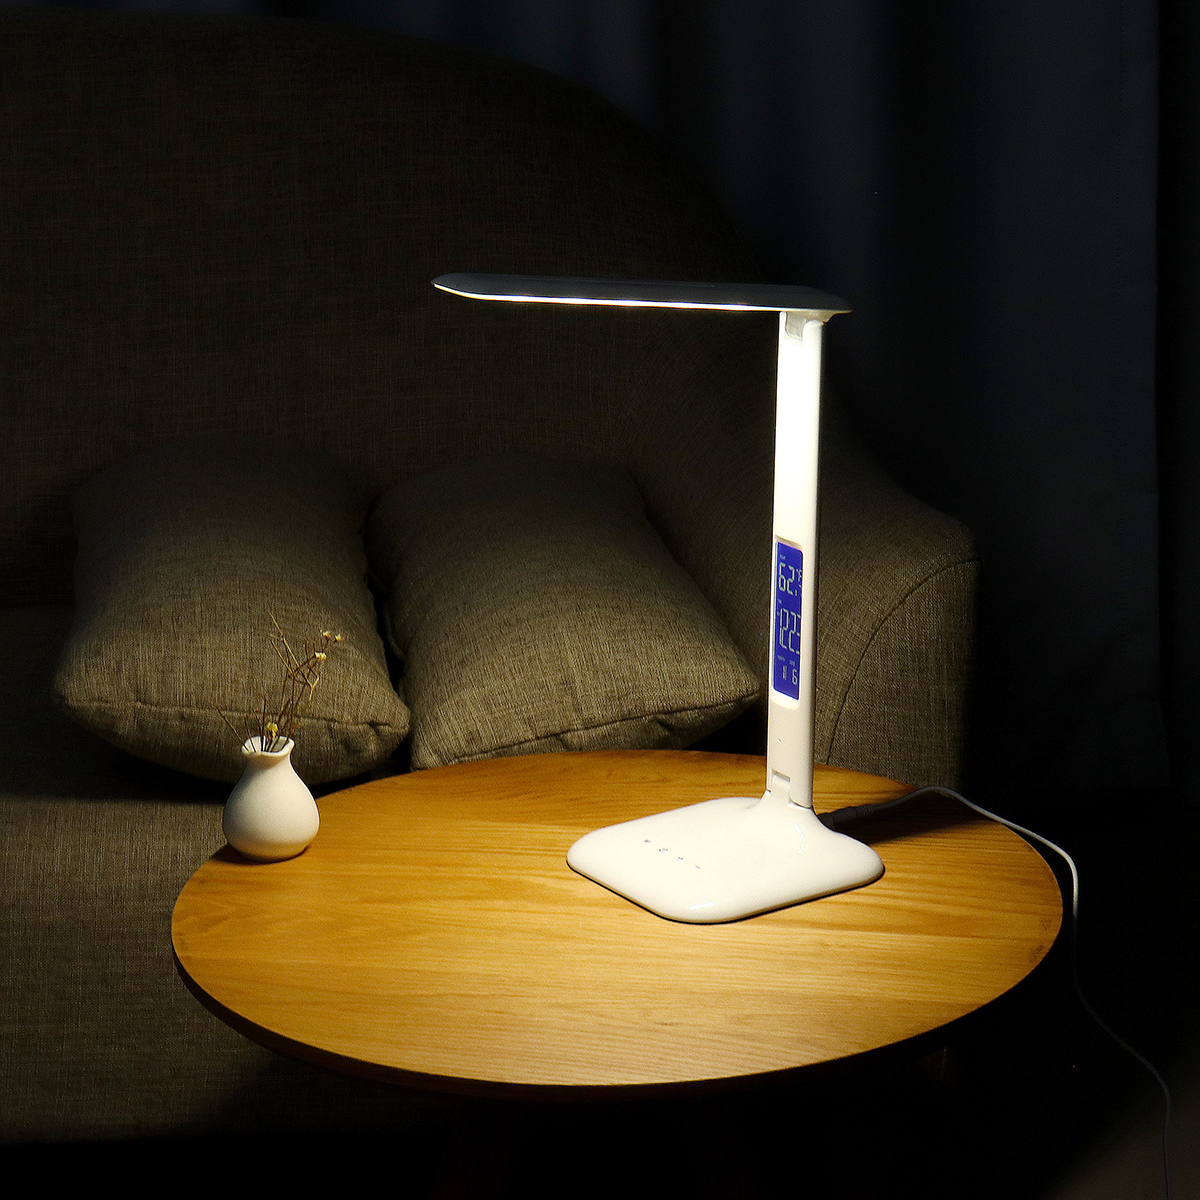 14-LED-Desk-Lamp-USB-Port-Folding-Reading-Lamp-Dimmer-Touch-Control-Light-1655539-3